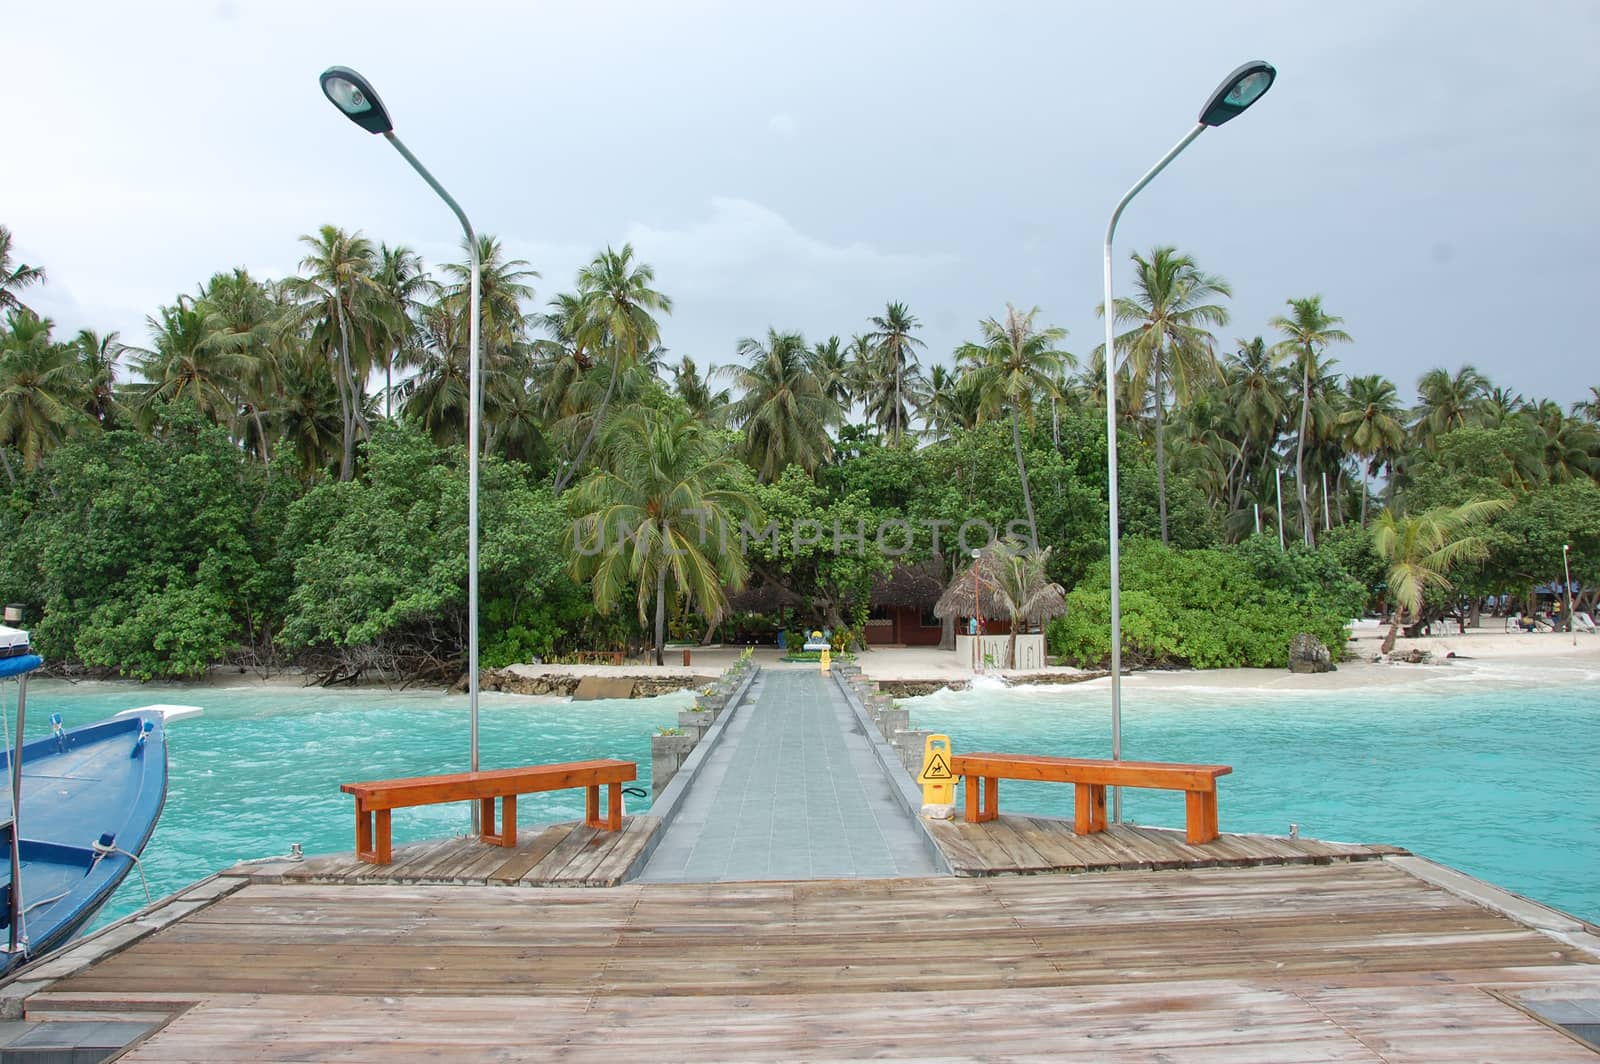 Pier at Kuda Bandos island Maldives by danemo